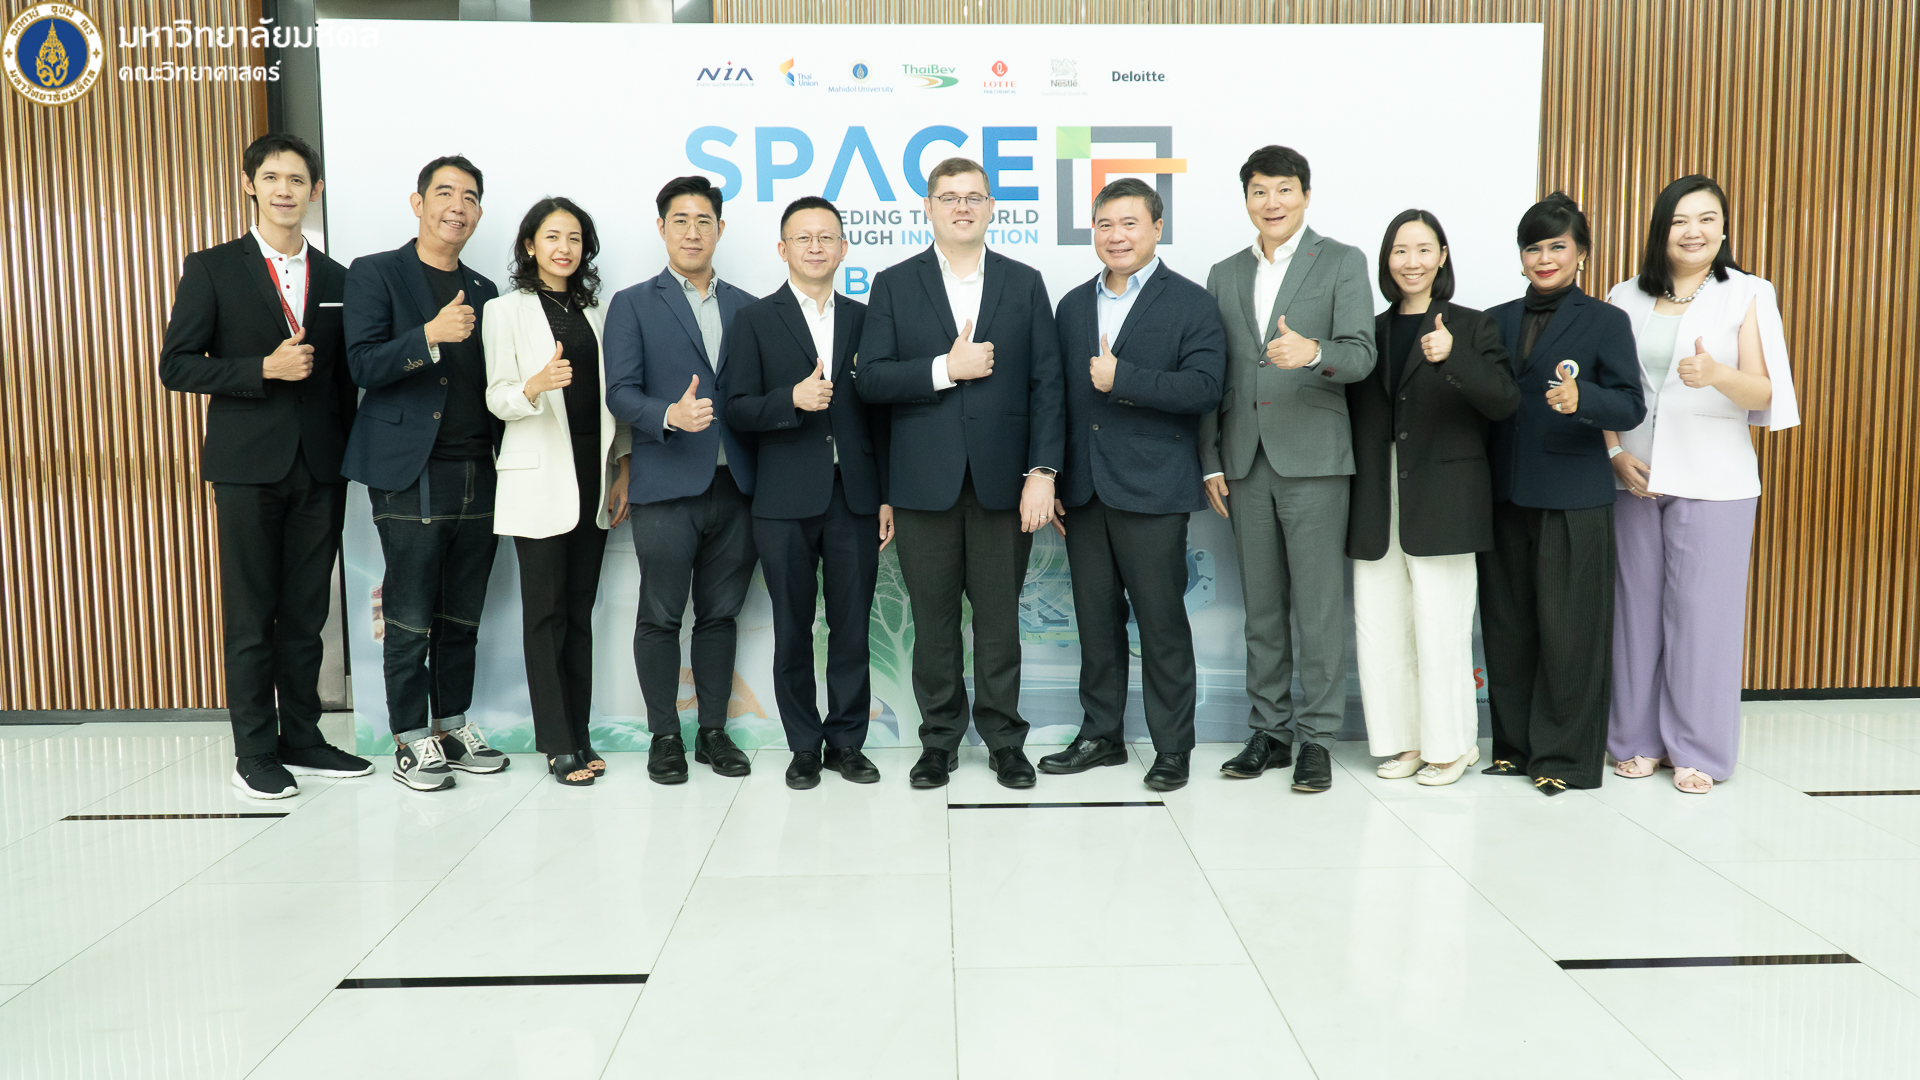 มหาวิทยาลัยมหิดล ร่วมกับพันธมิตร Thai Union, NIA, ThaiBev, Deloitte, LOTTE และ Nestlé เดินหน้าคัดเลือก 10 สตาร์ทอัพด้านเทคโนโลยีอาหารจากนานาชาติร่วมโปรแกรมบ่มเพาะธุรกิจ SPACE-F Incubator รุ่นที่ 5